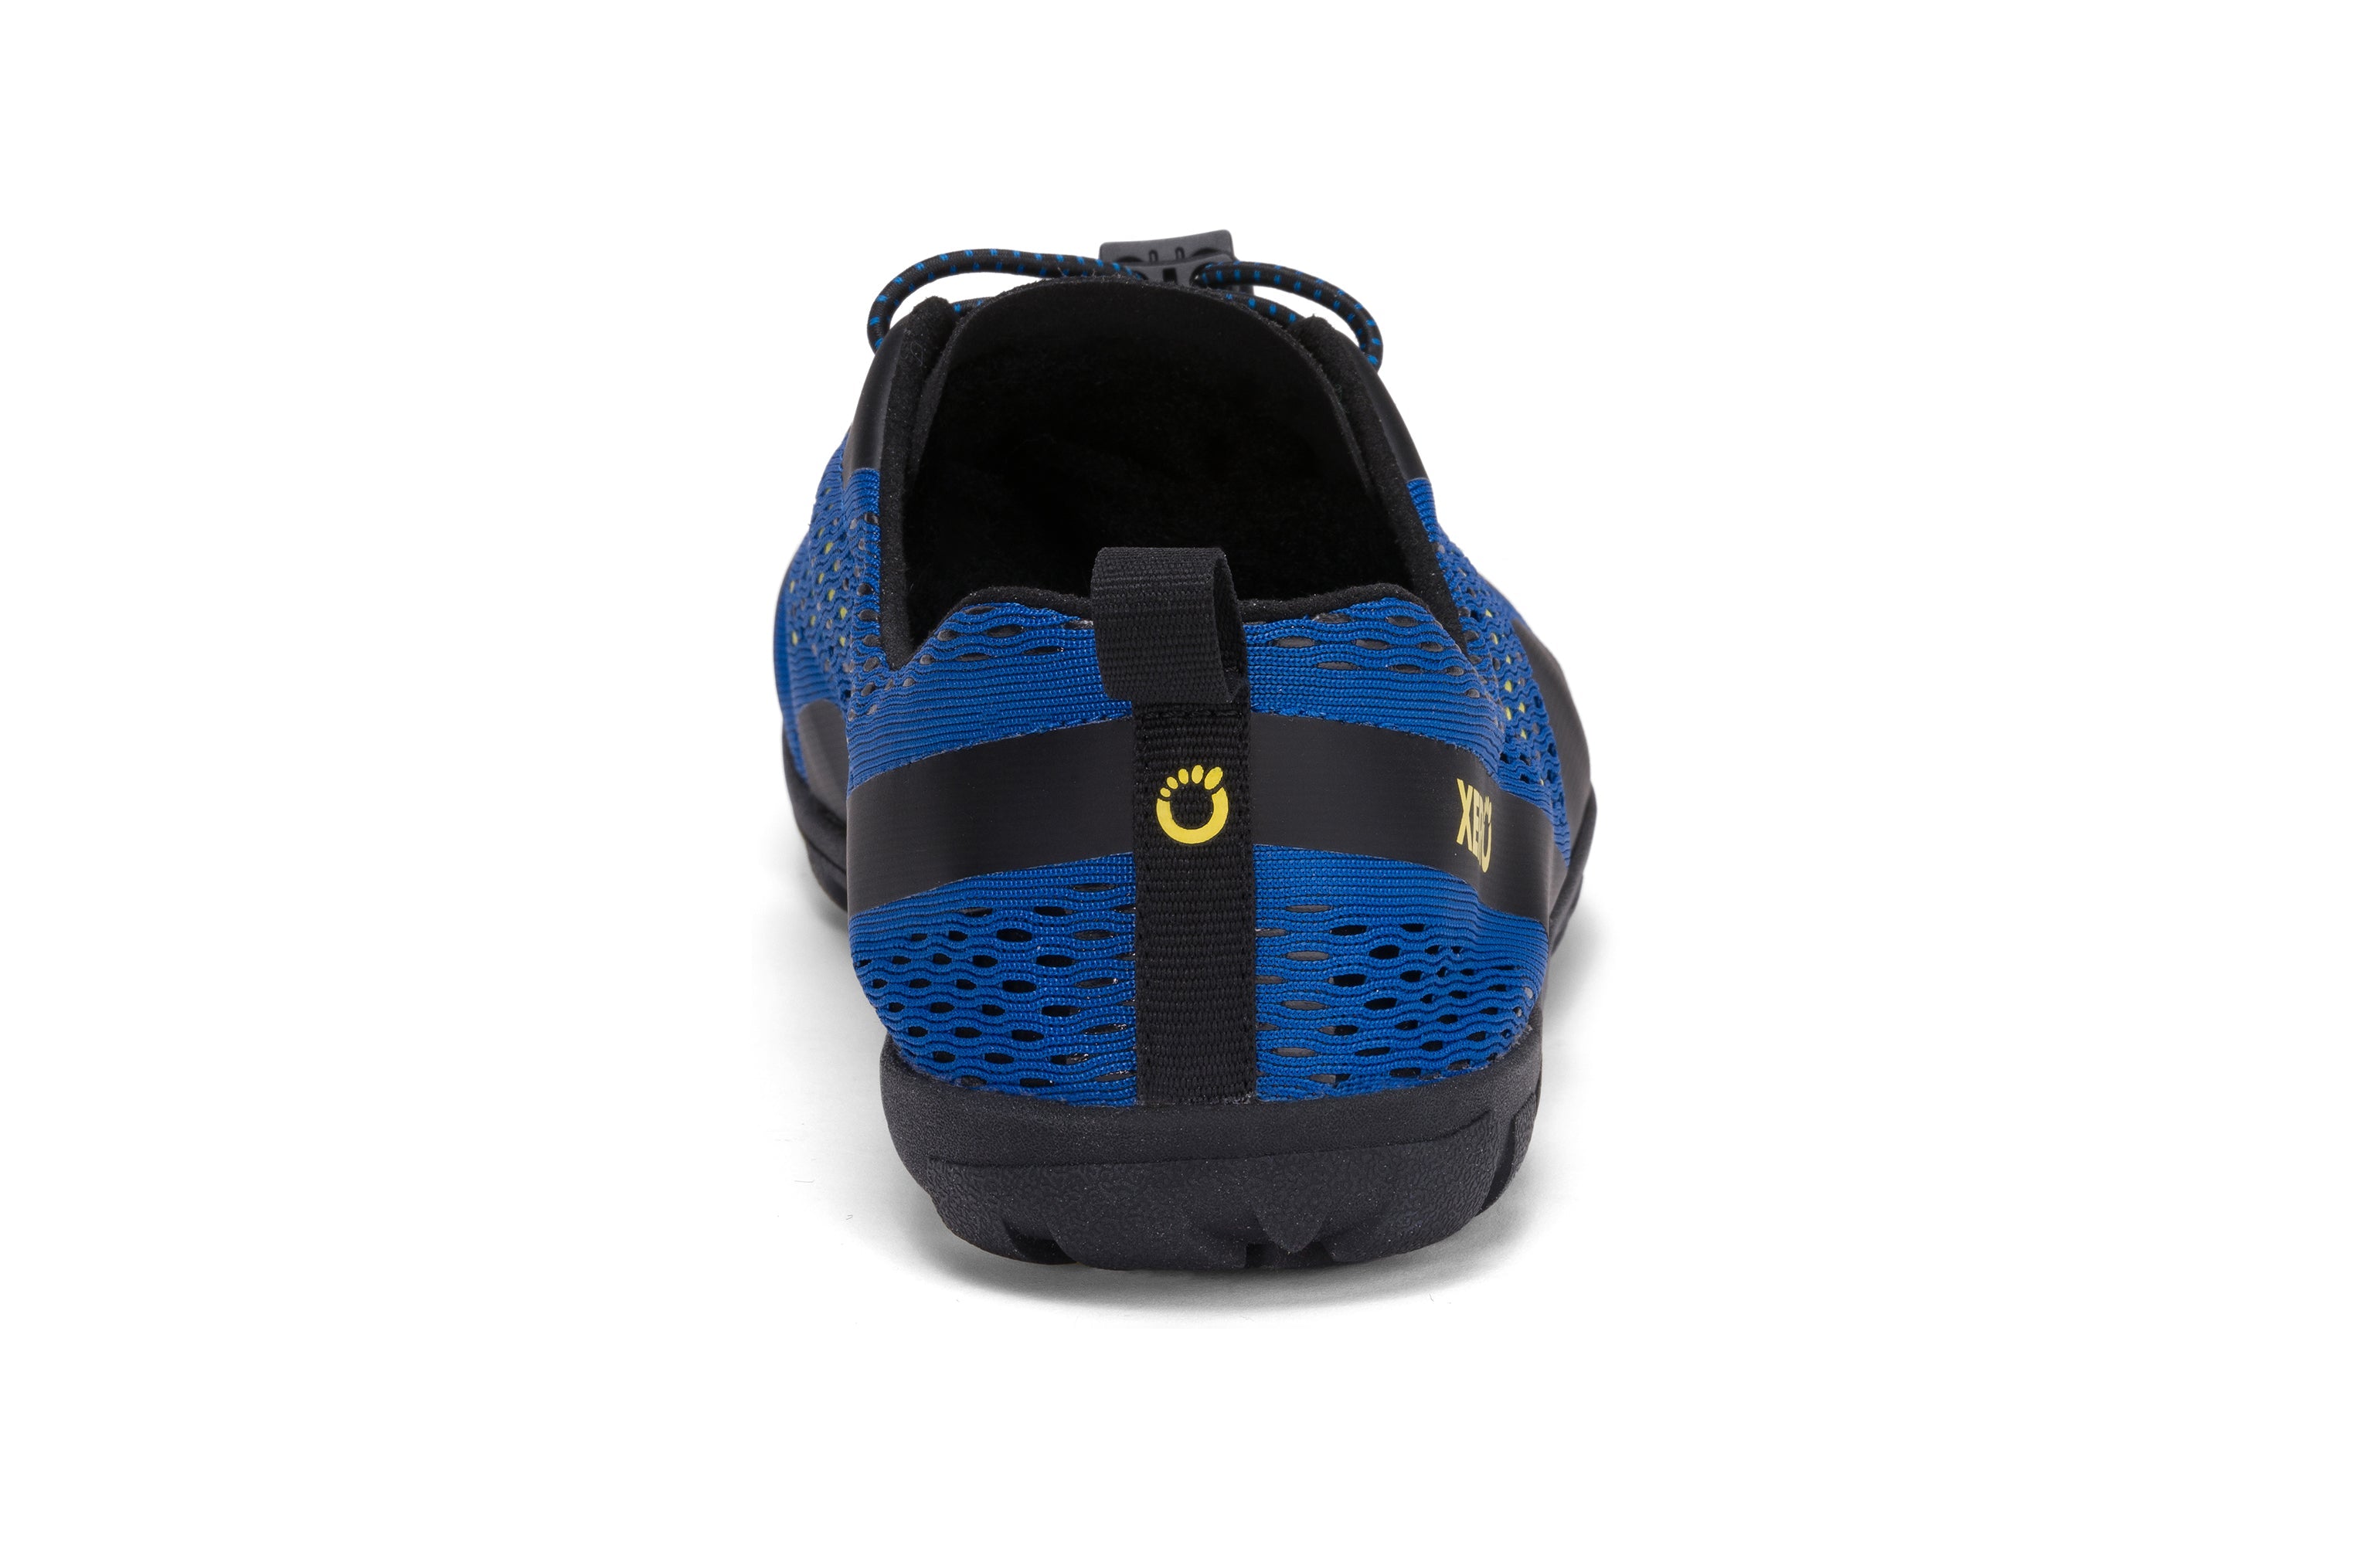 Xero Shoes Aqua X Sport barfods vand træningssko til mænd i farven blue / yellow, bagfra